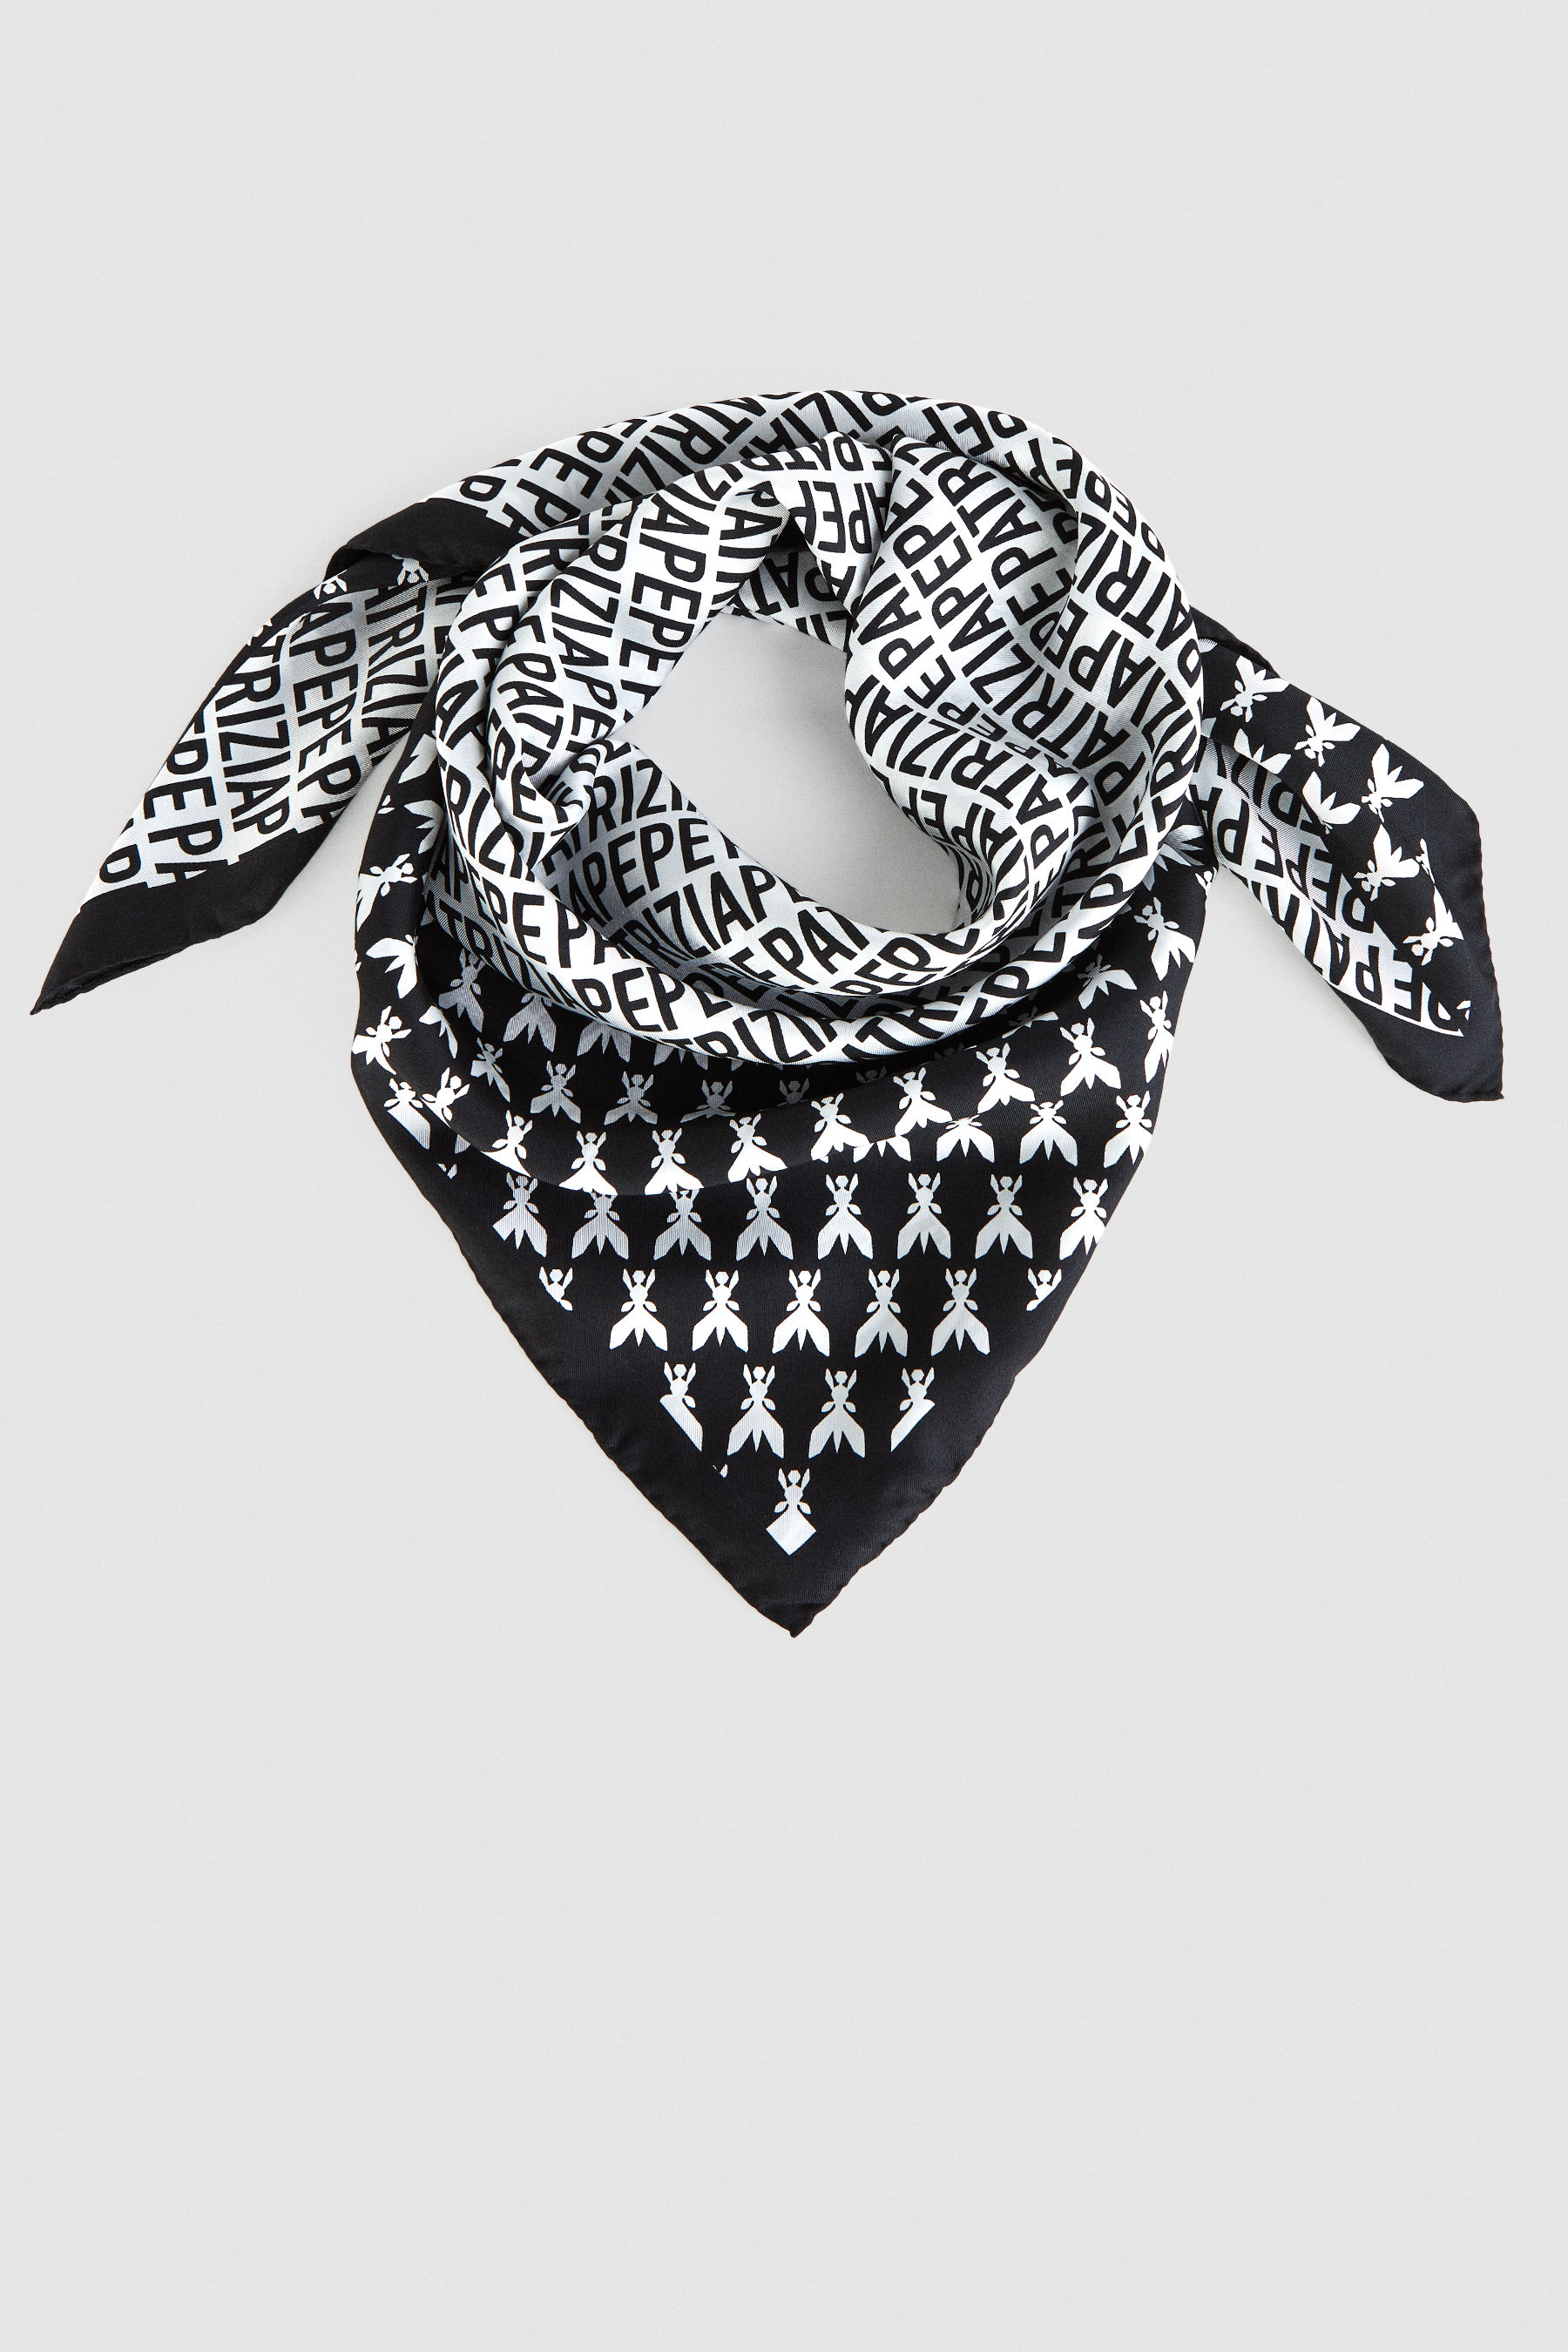 15347円 メーカー公式 PATRIZIA PEPE SERA Scarves and foulards レディース